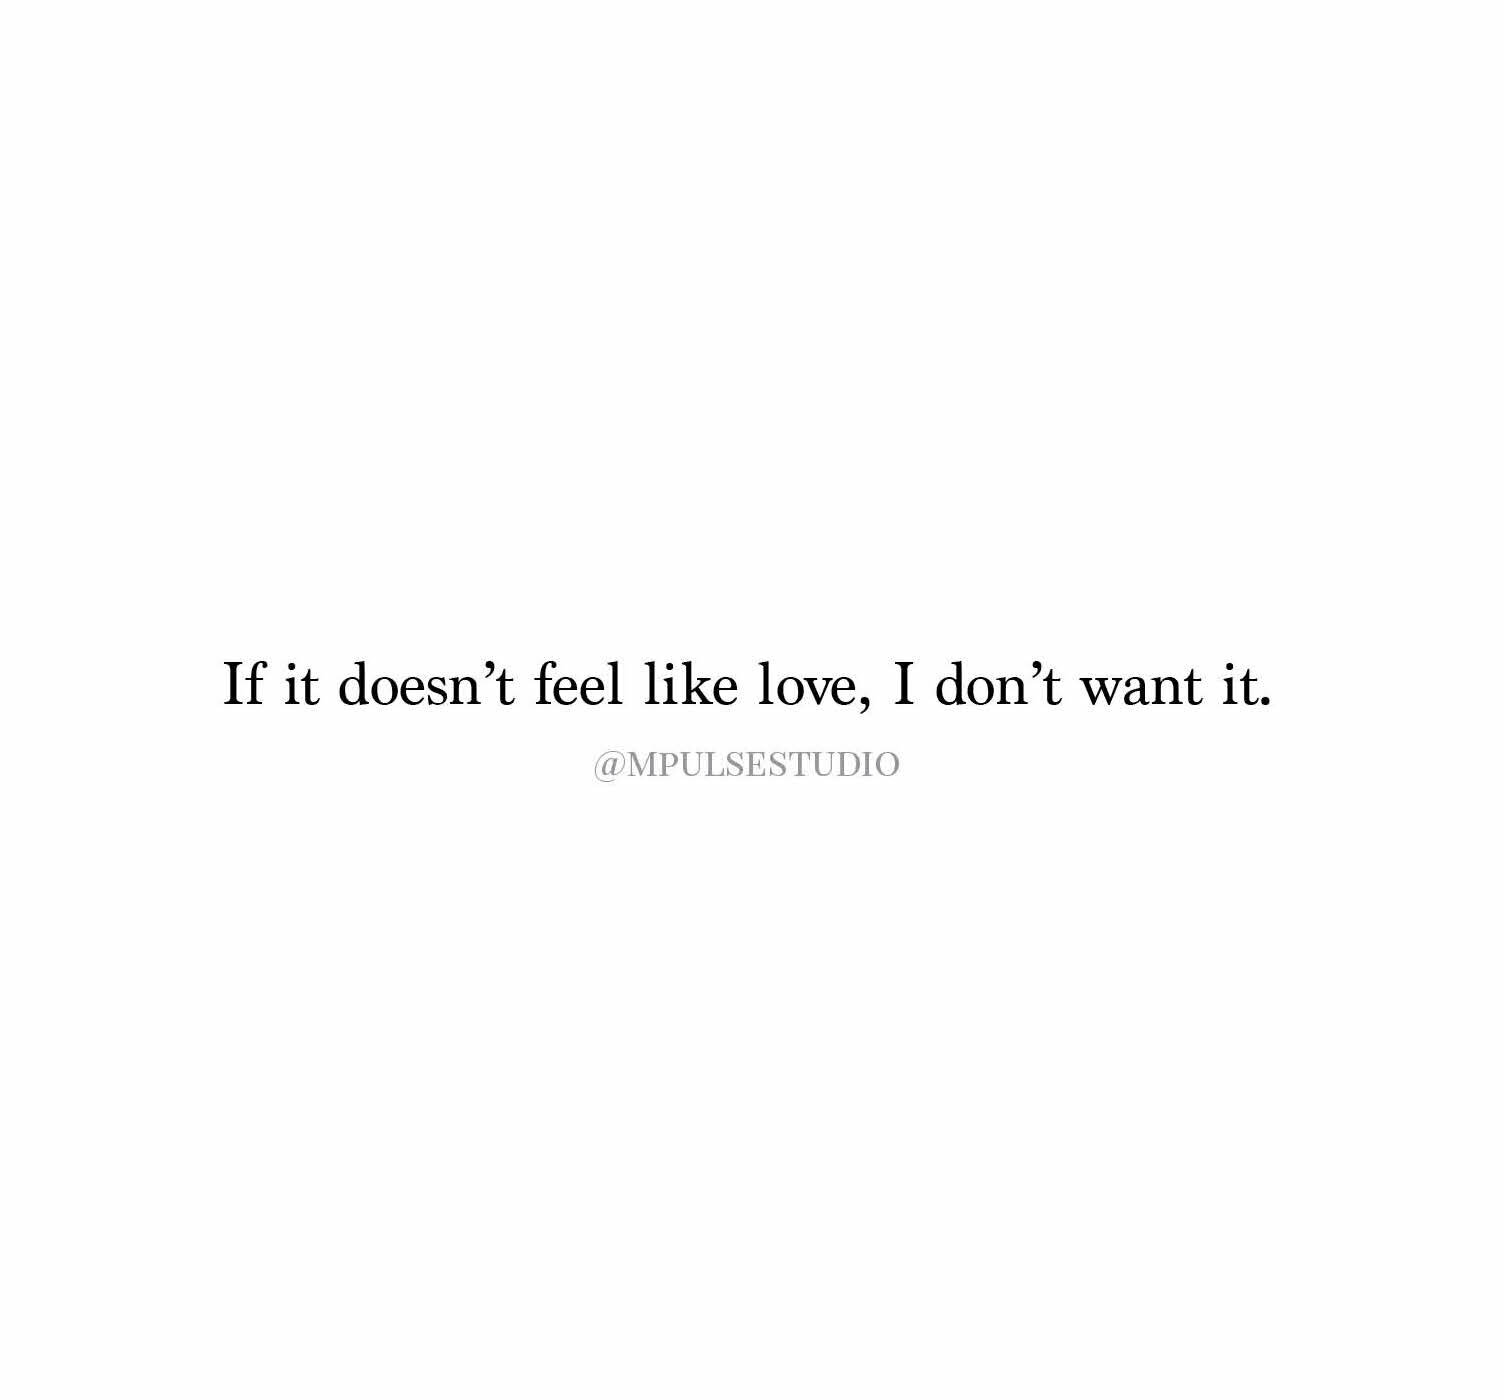 If it doesn't feel like love.jpg